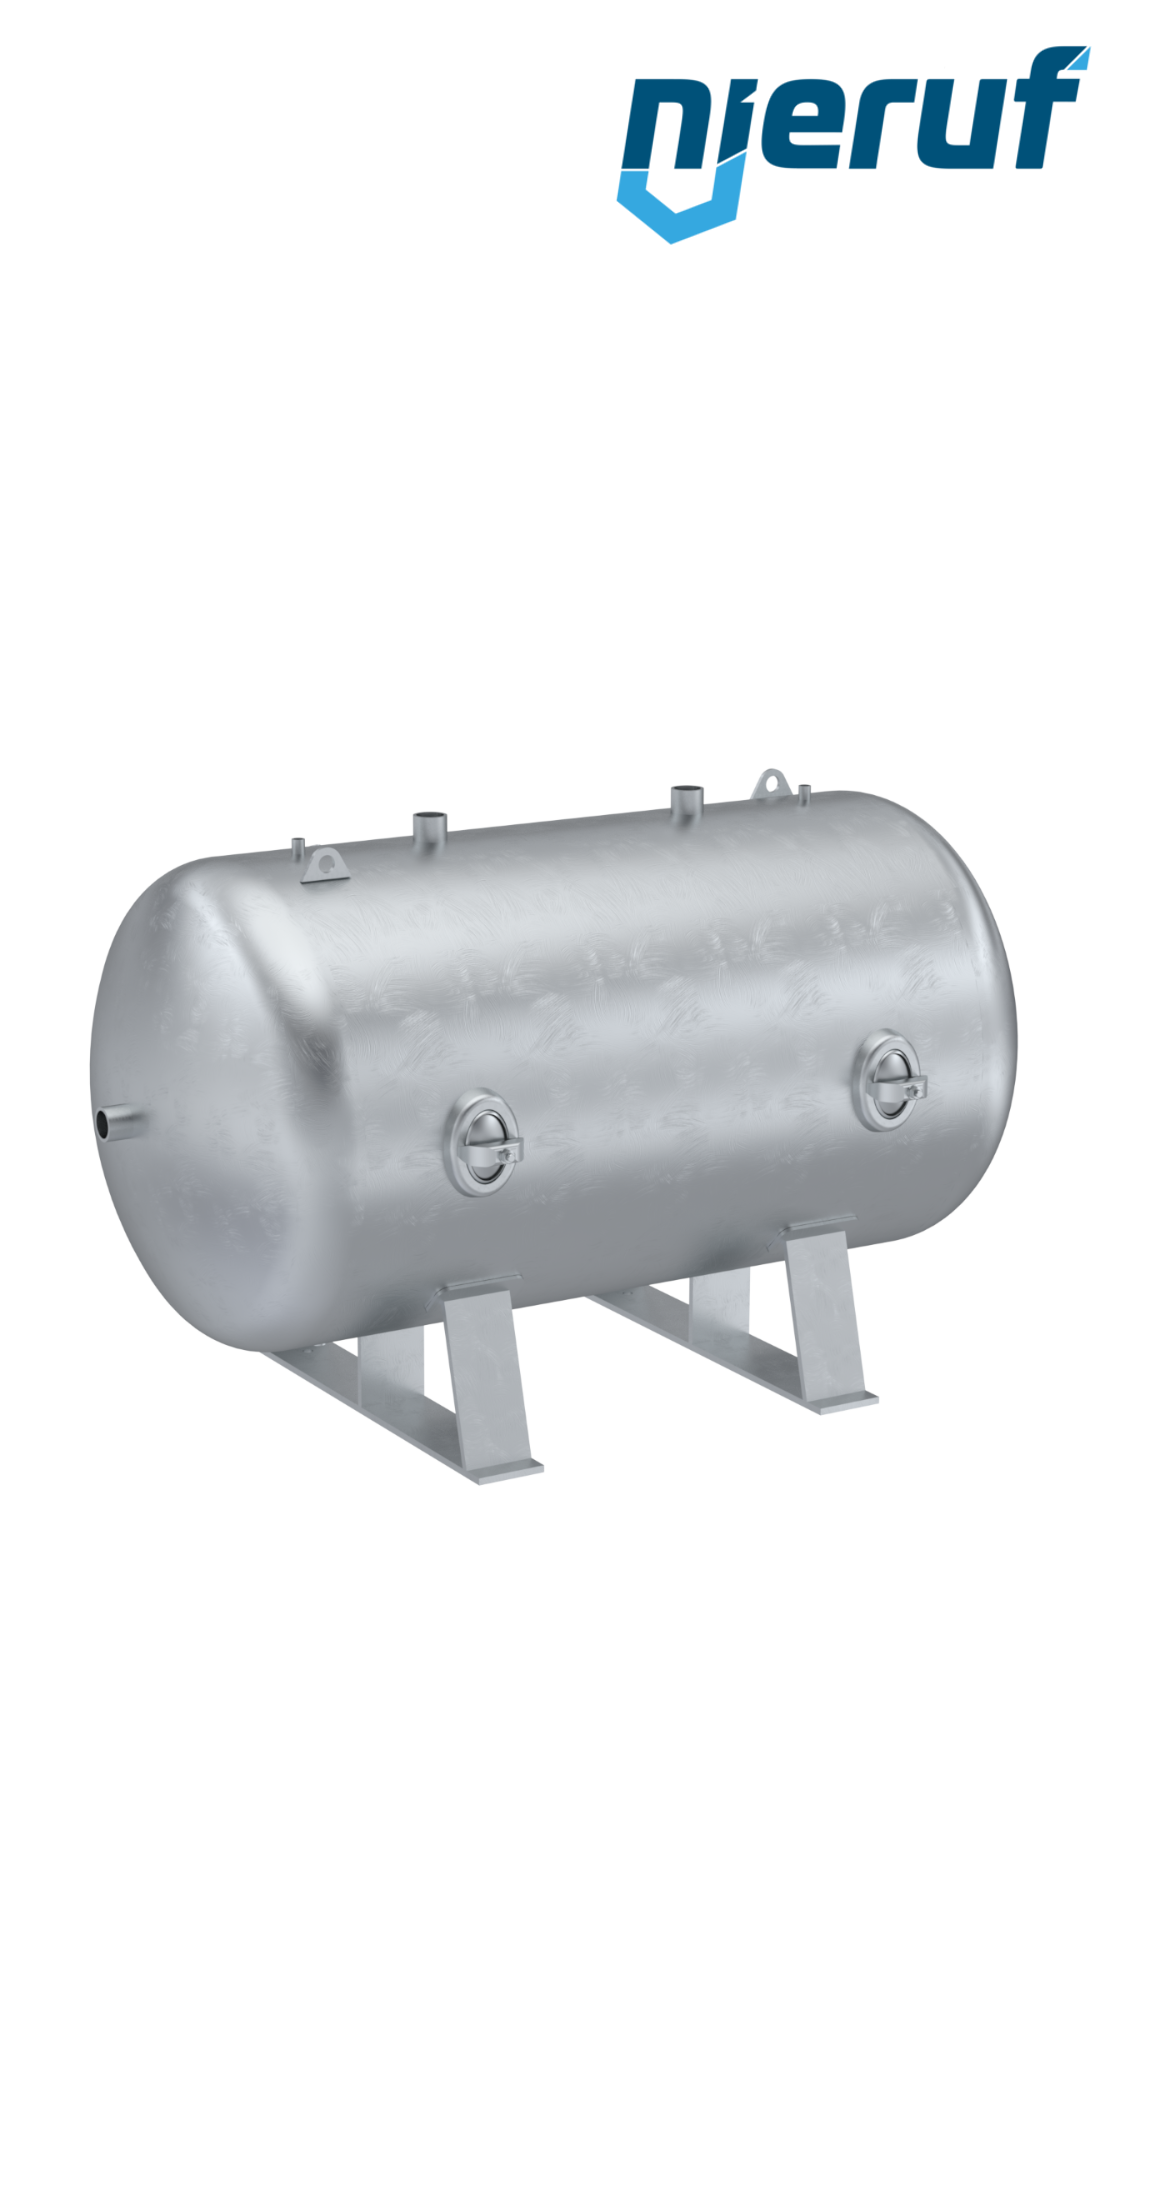 Serbatoio a pressione orizzontale BE01 5000 litri, 0-11 bar, acciaio zincato, diametro 1400 mm